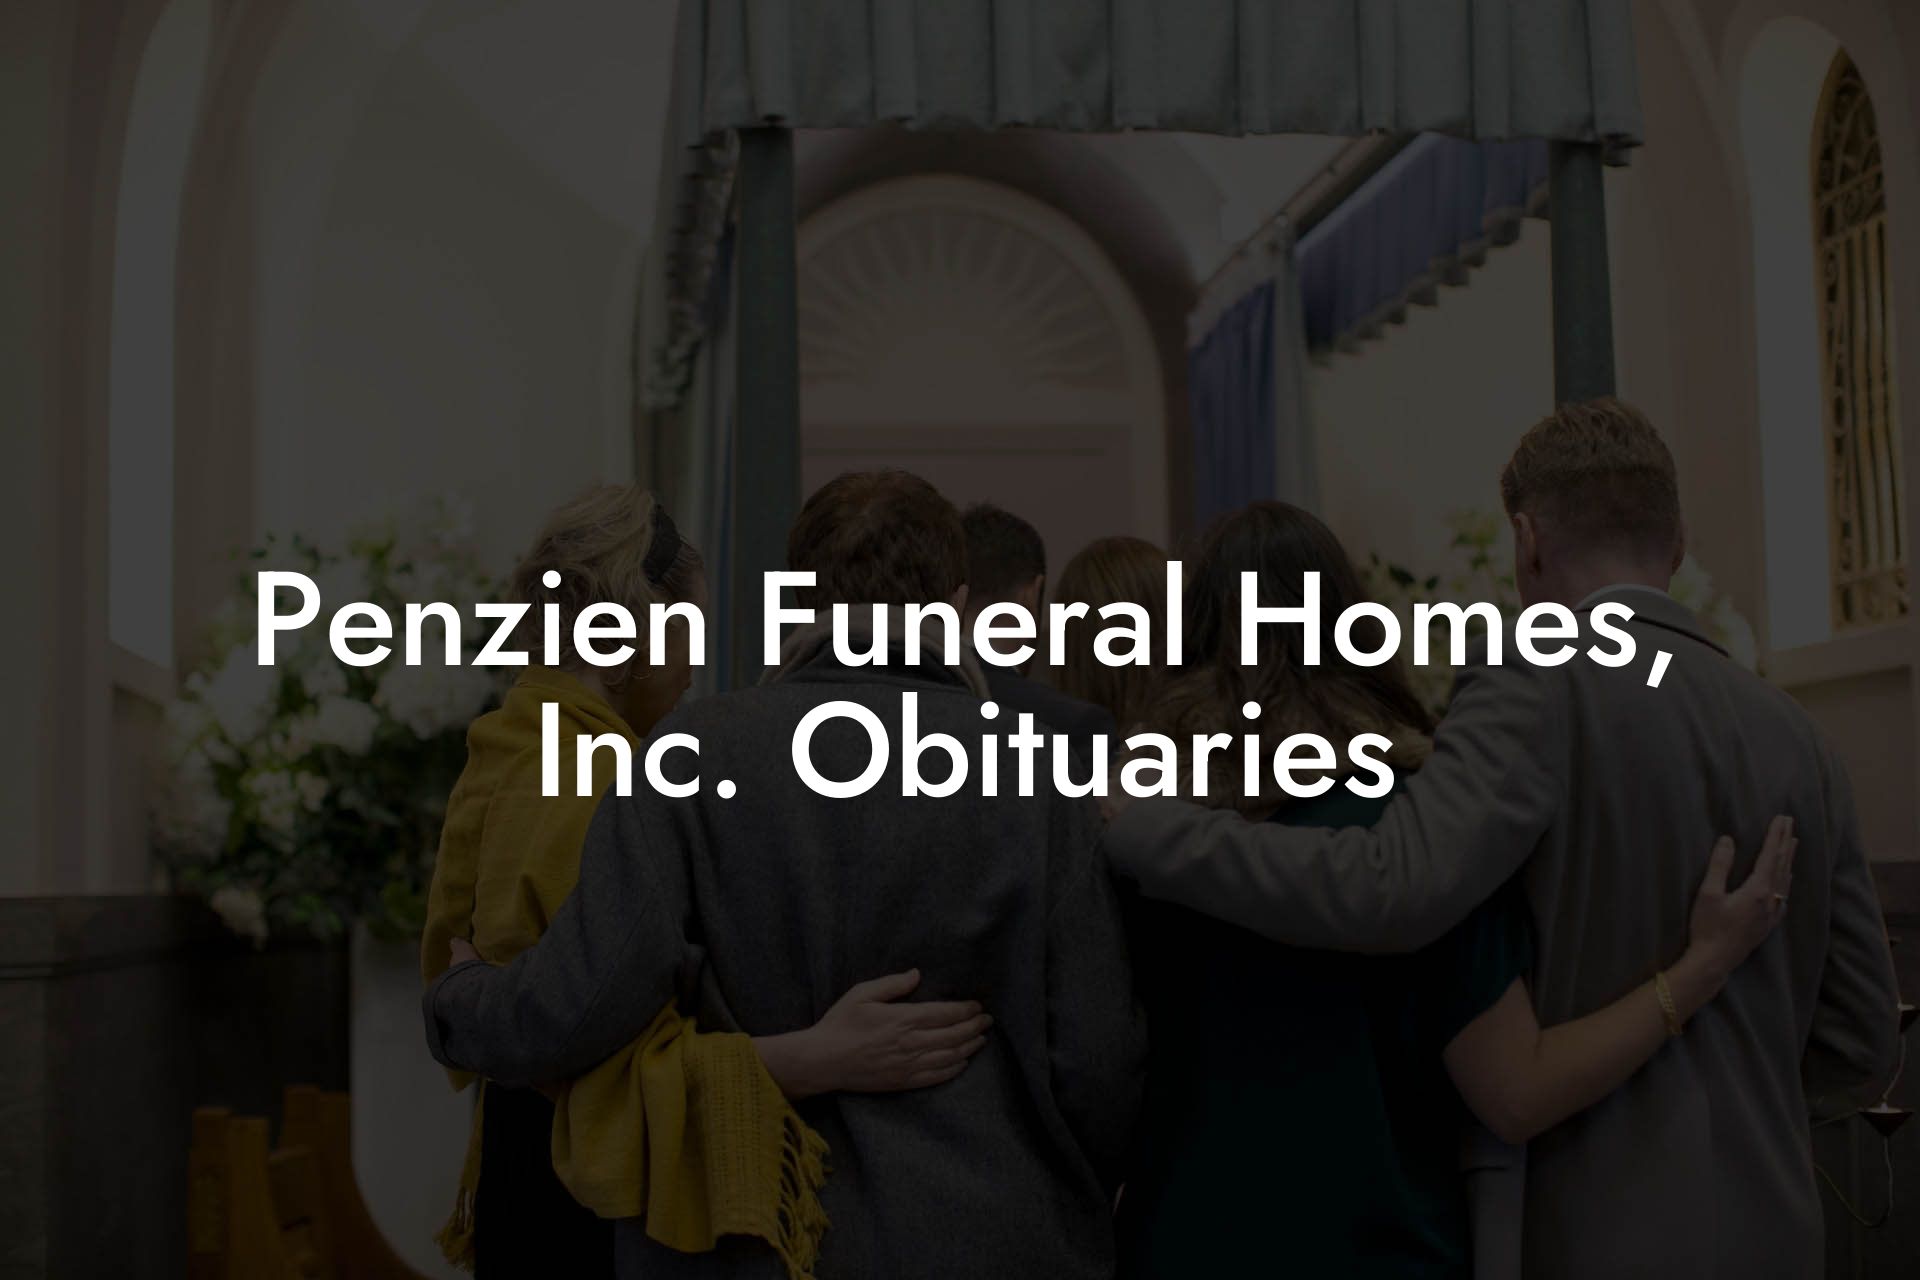 Penzien Funeral Homes, Inc. Obituaries